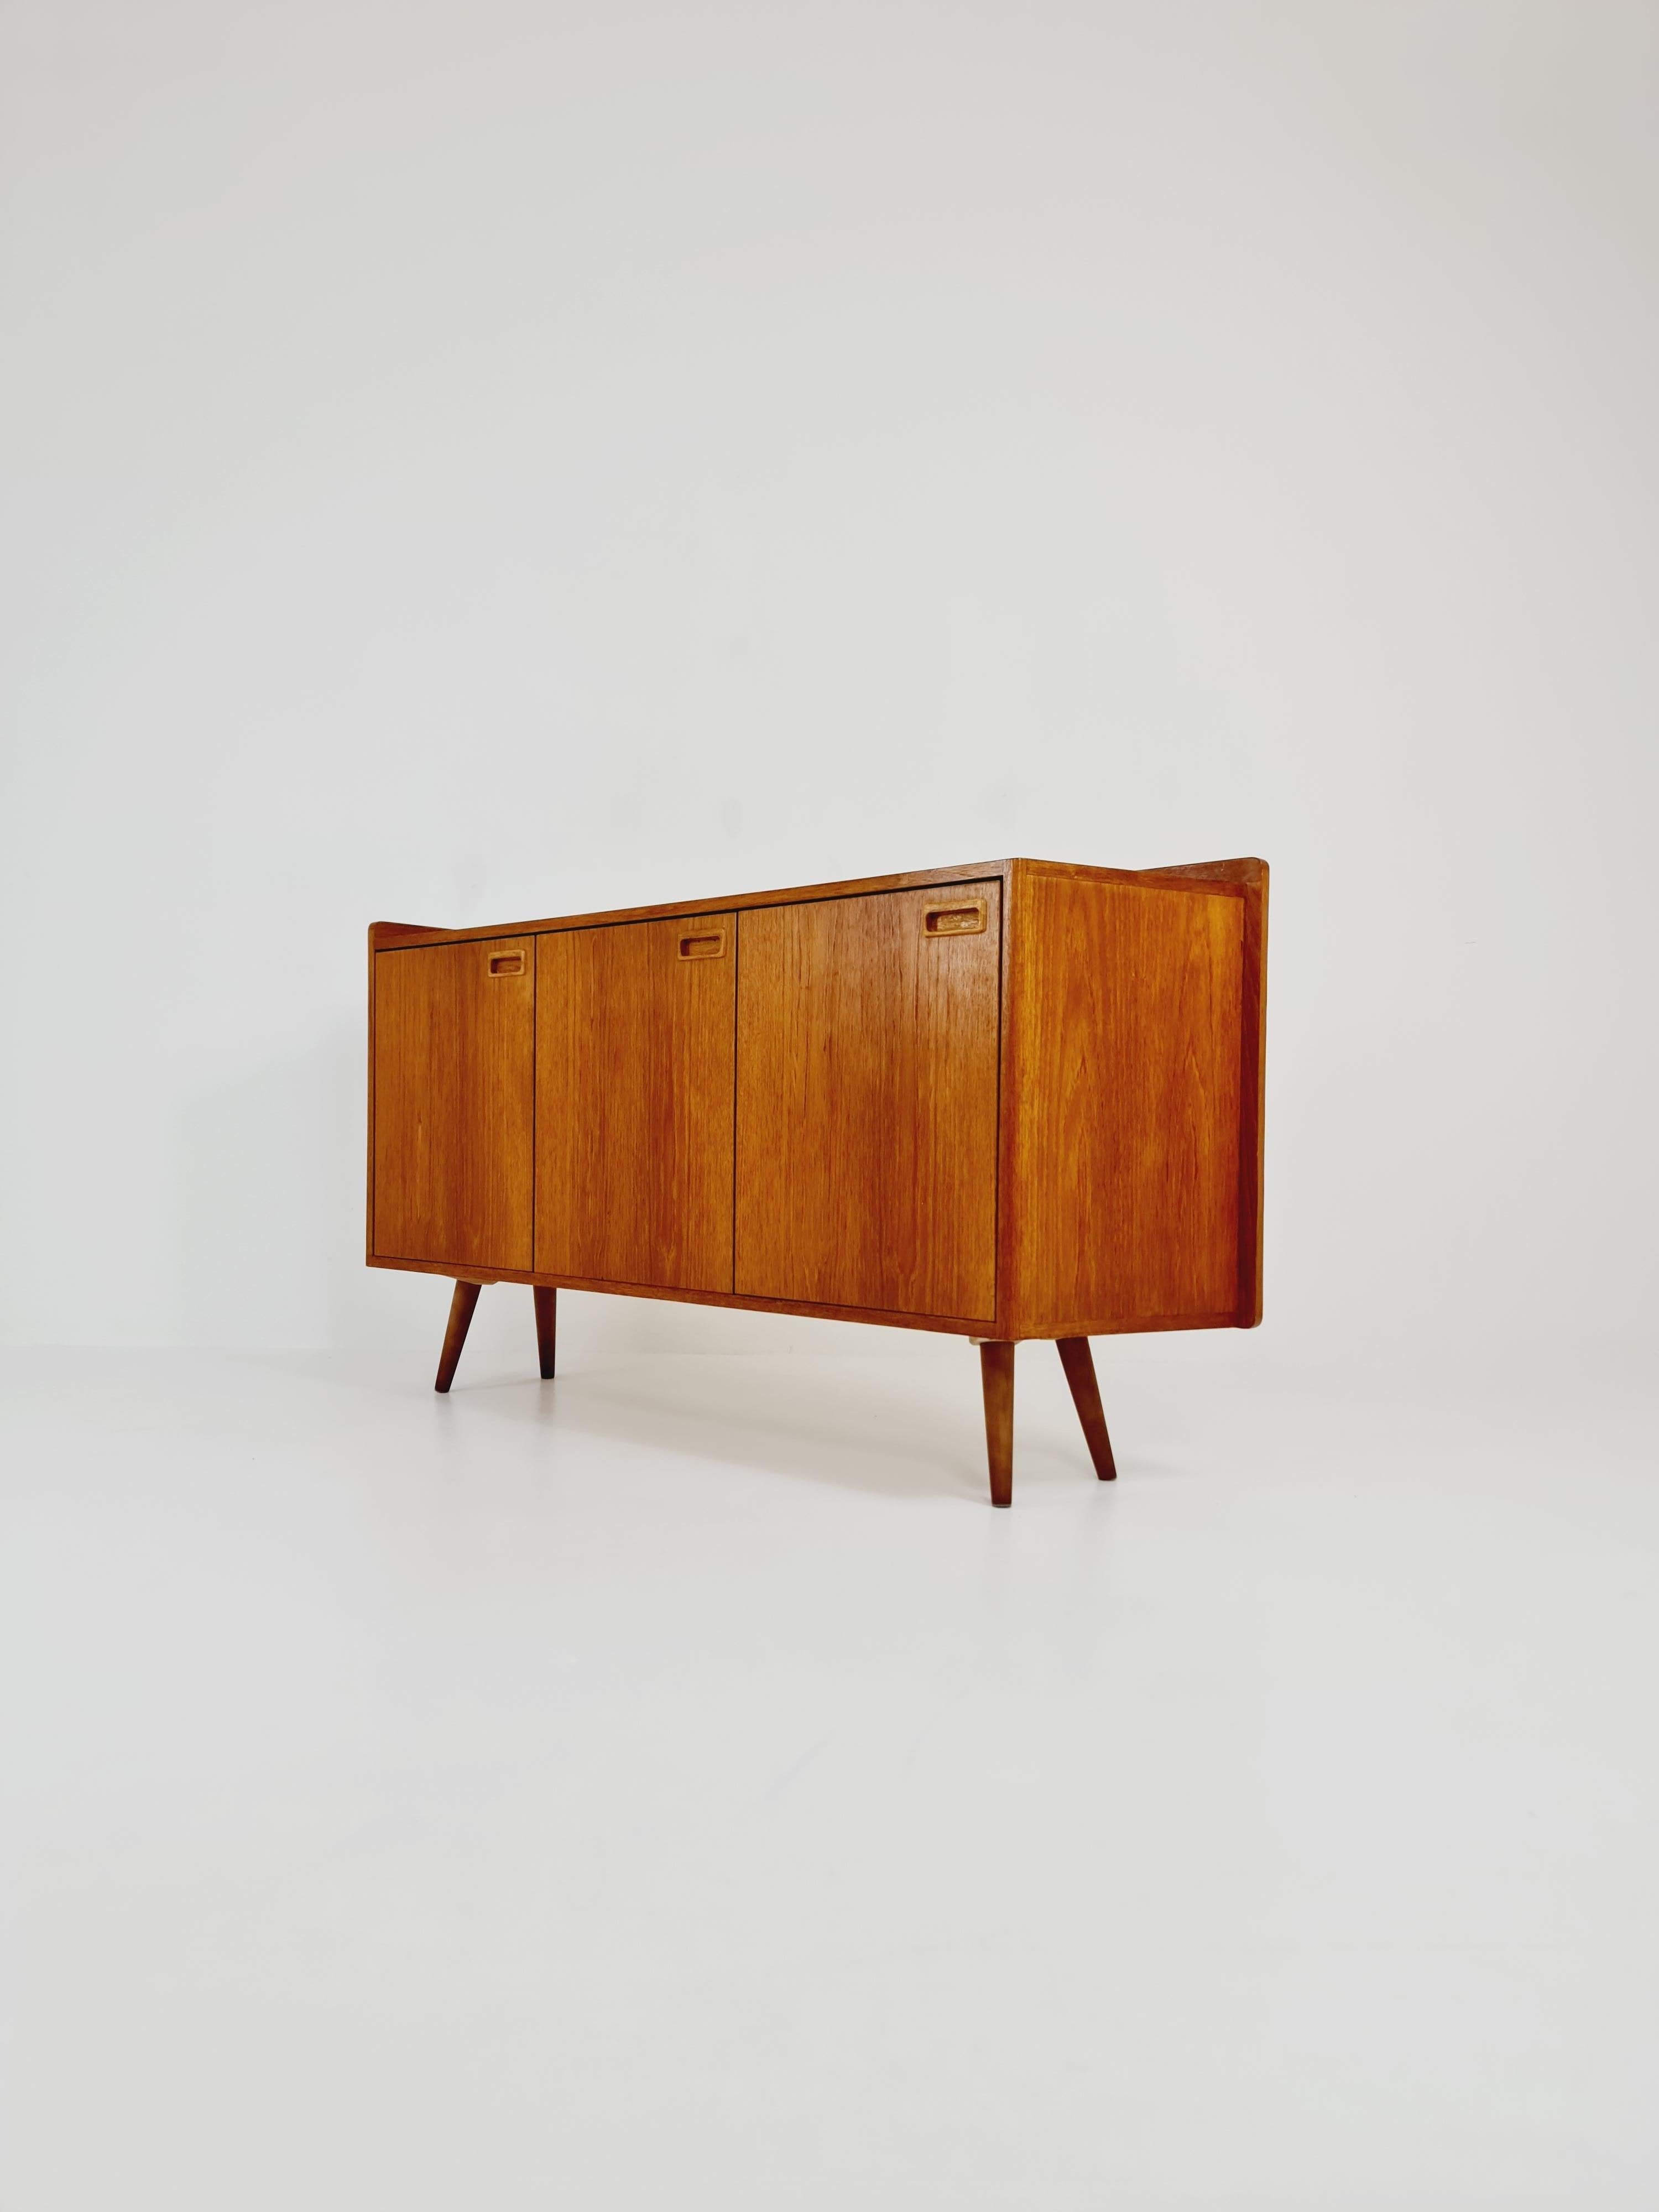 Rare Scandinavian Vintage Teak Sideboard left Corner-fit, 1960s For Sale 1